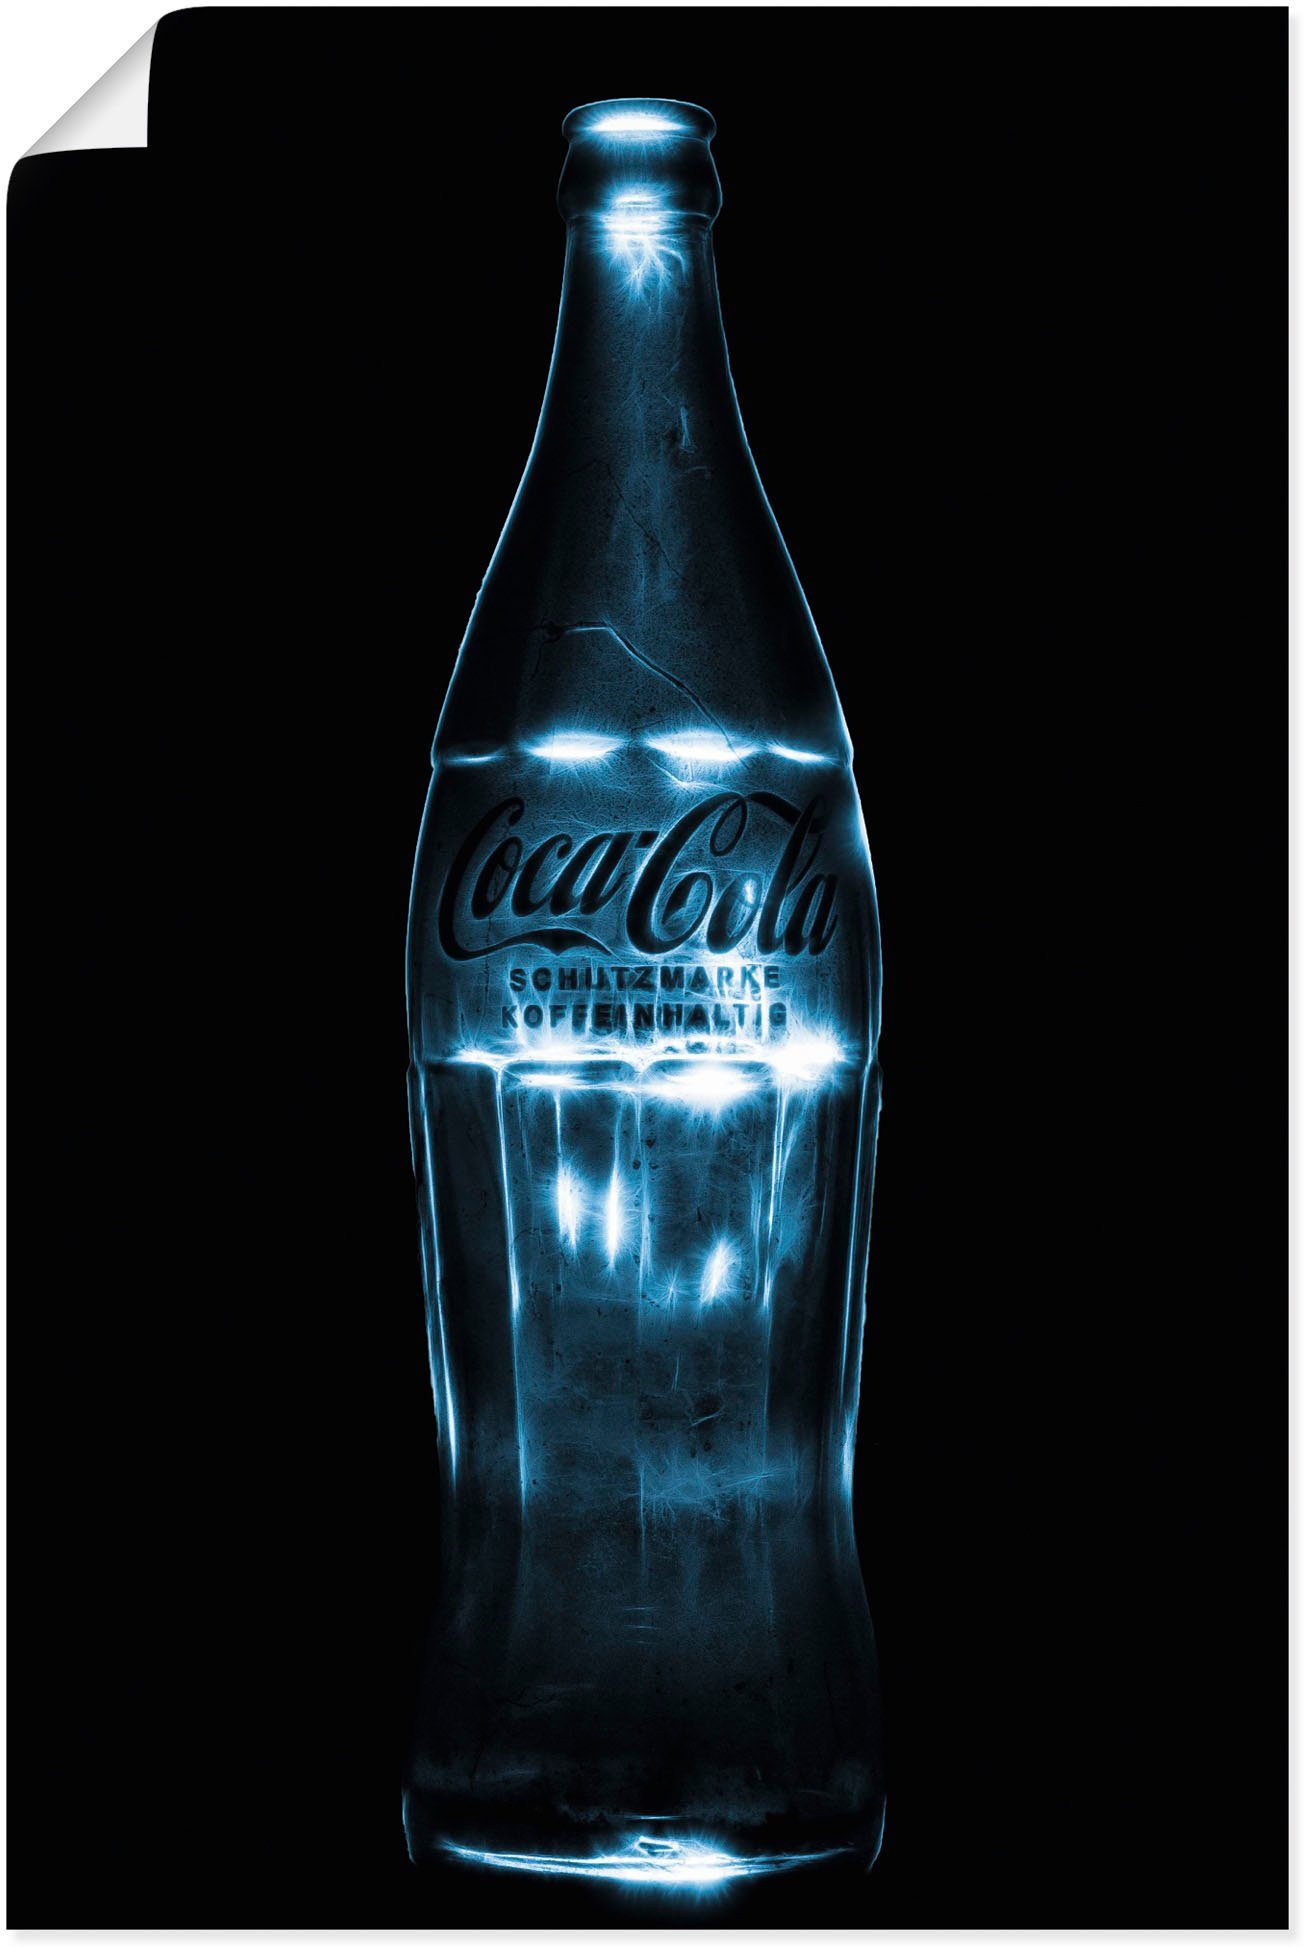 Wandaufkleber als Licht in Poster mit Getränke Leinwandbild, Wandbild Alubild, Artland just St), versch. Größen beleucht, coke (1 oder Colaflasche